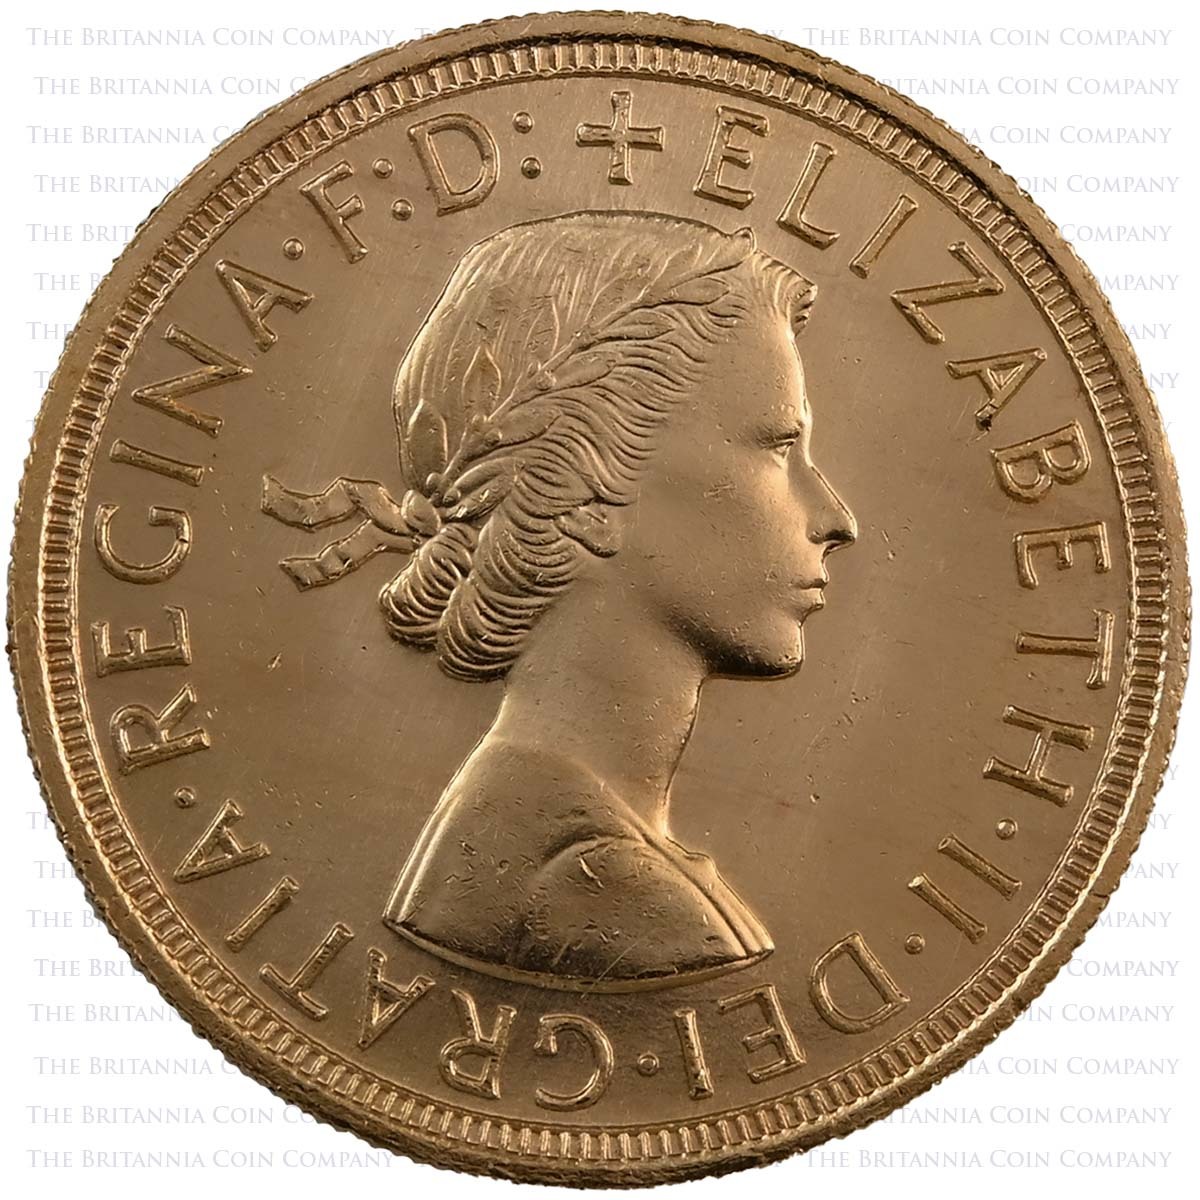 2004 Elizabeth II Gillick Portrait 13 Coin Set 1957 Sovereign Obverse